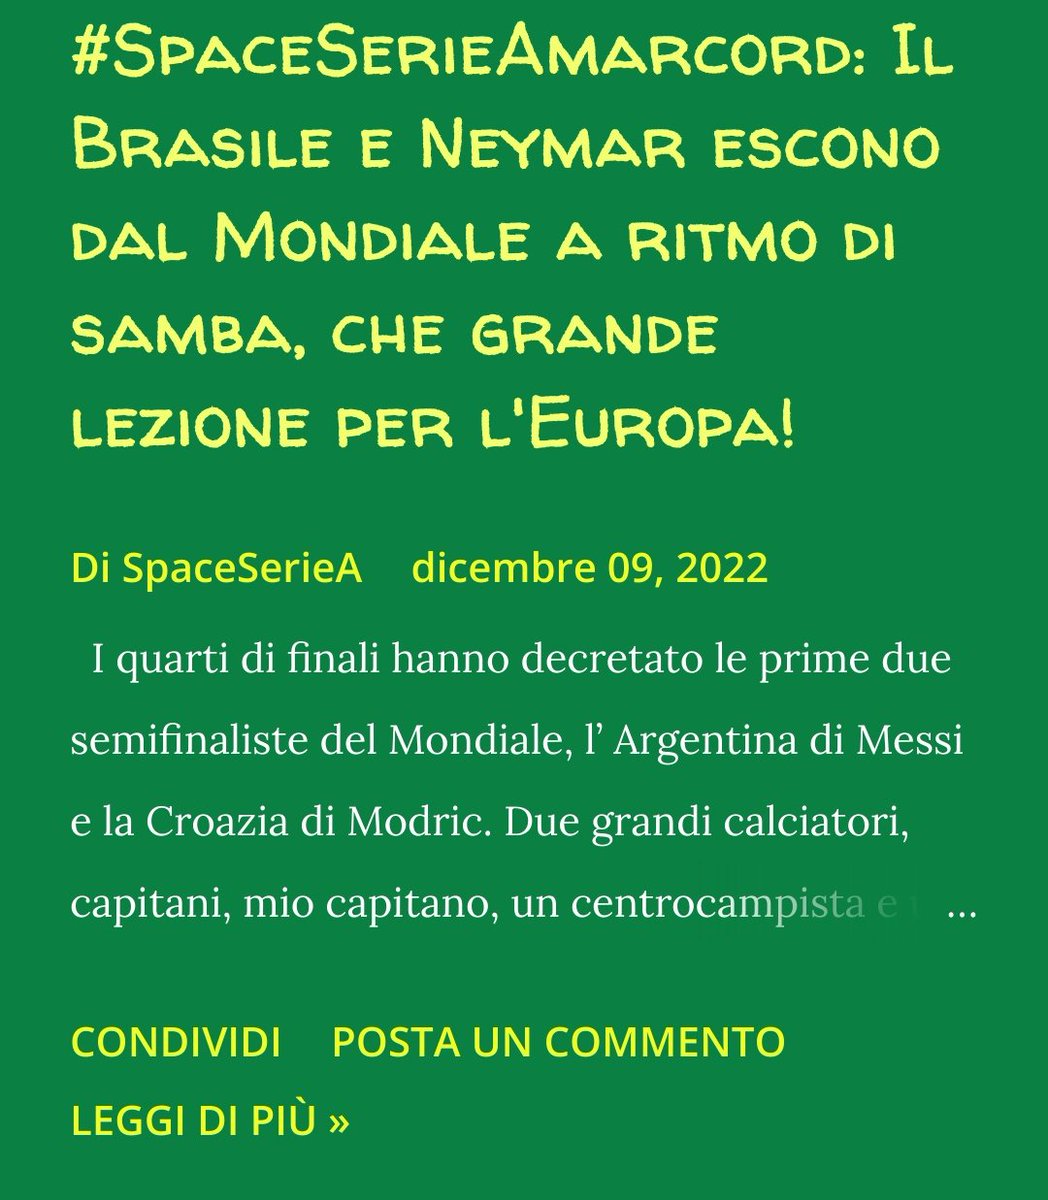 ⚽⚽ Il #Brasile di #Neymar esce dalla Coppa del Mondo, ma in realtà ha vinto anzi stravinto #SpaceSerieA🚀
#CroatiaVsBrazil
⬇️⬇️⬇️
spaceseriea.blogspot.com/2022/12/spaces…